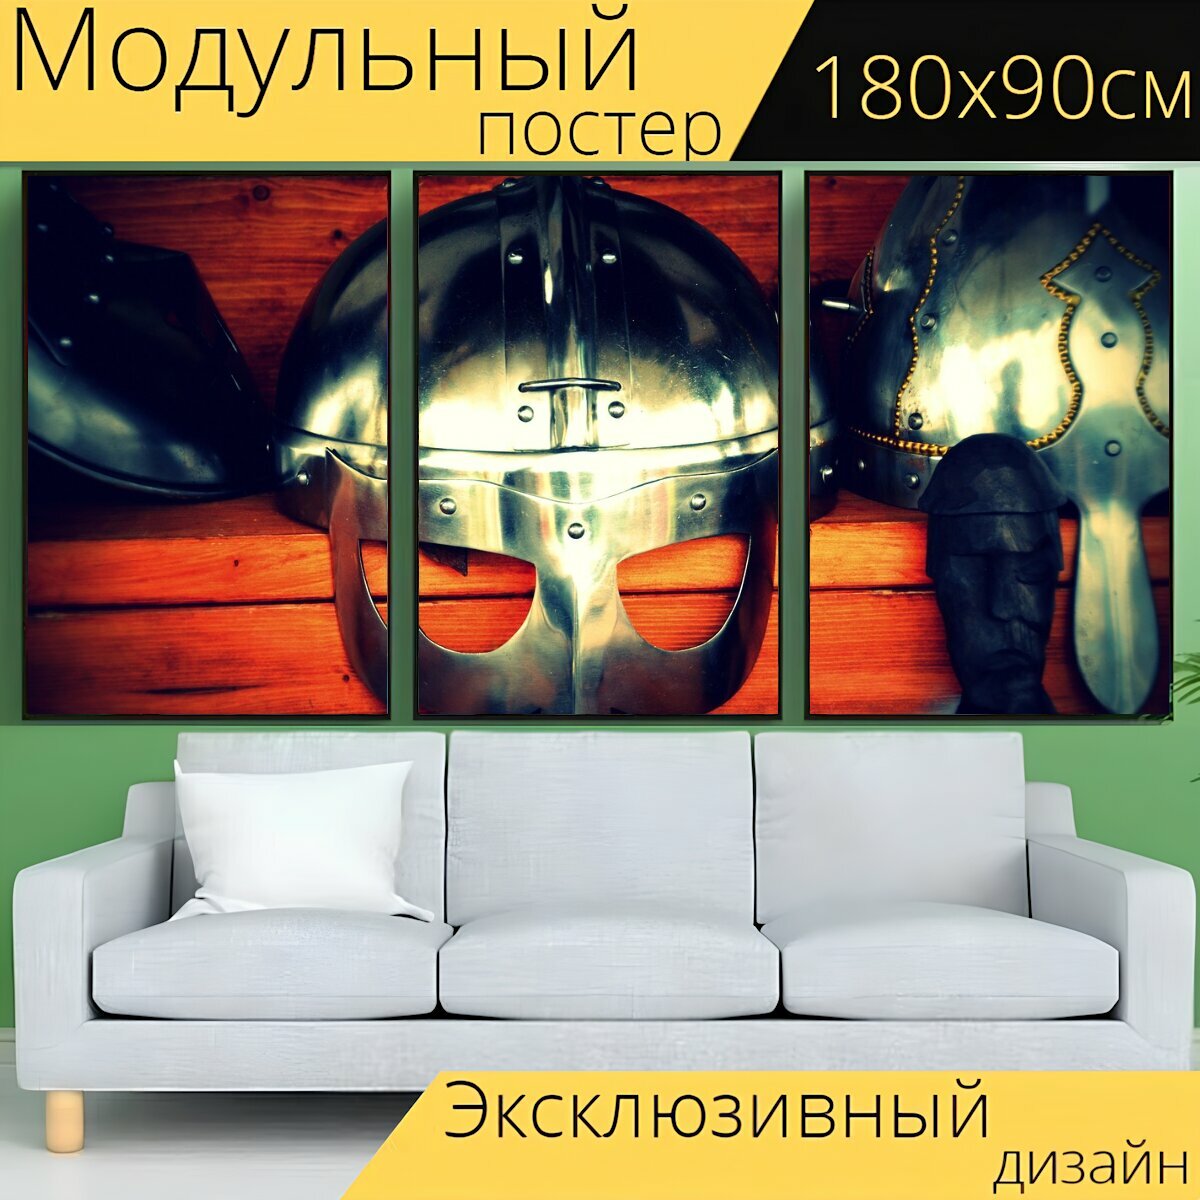 Модульный постер "Викинги, шлем, исторический" 180 x 90 см. для интерьера